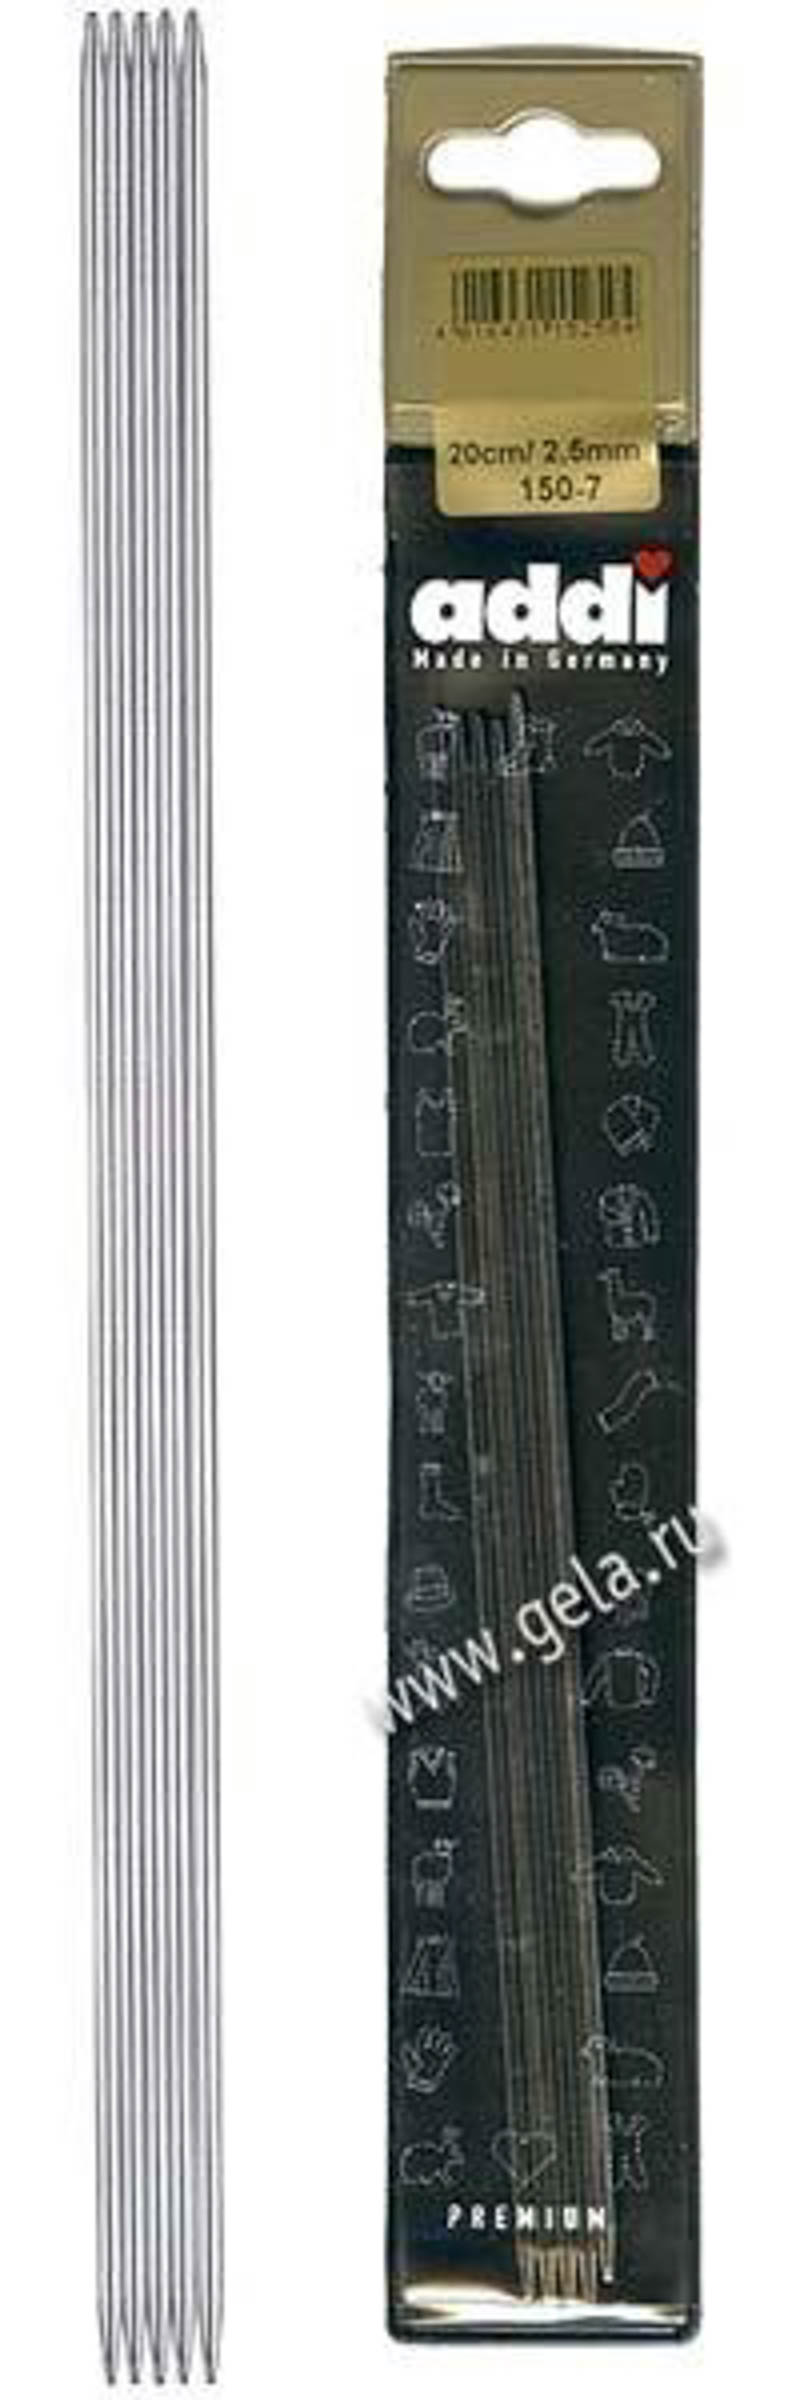 Спицы чулочные из никелированной стали  ADDI 150-7, 20 см, №1.5